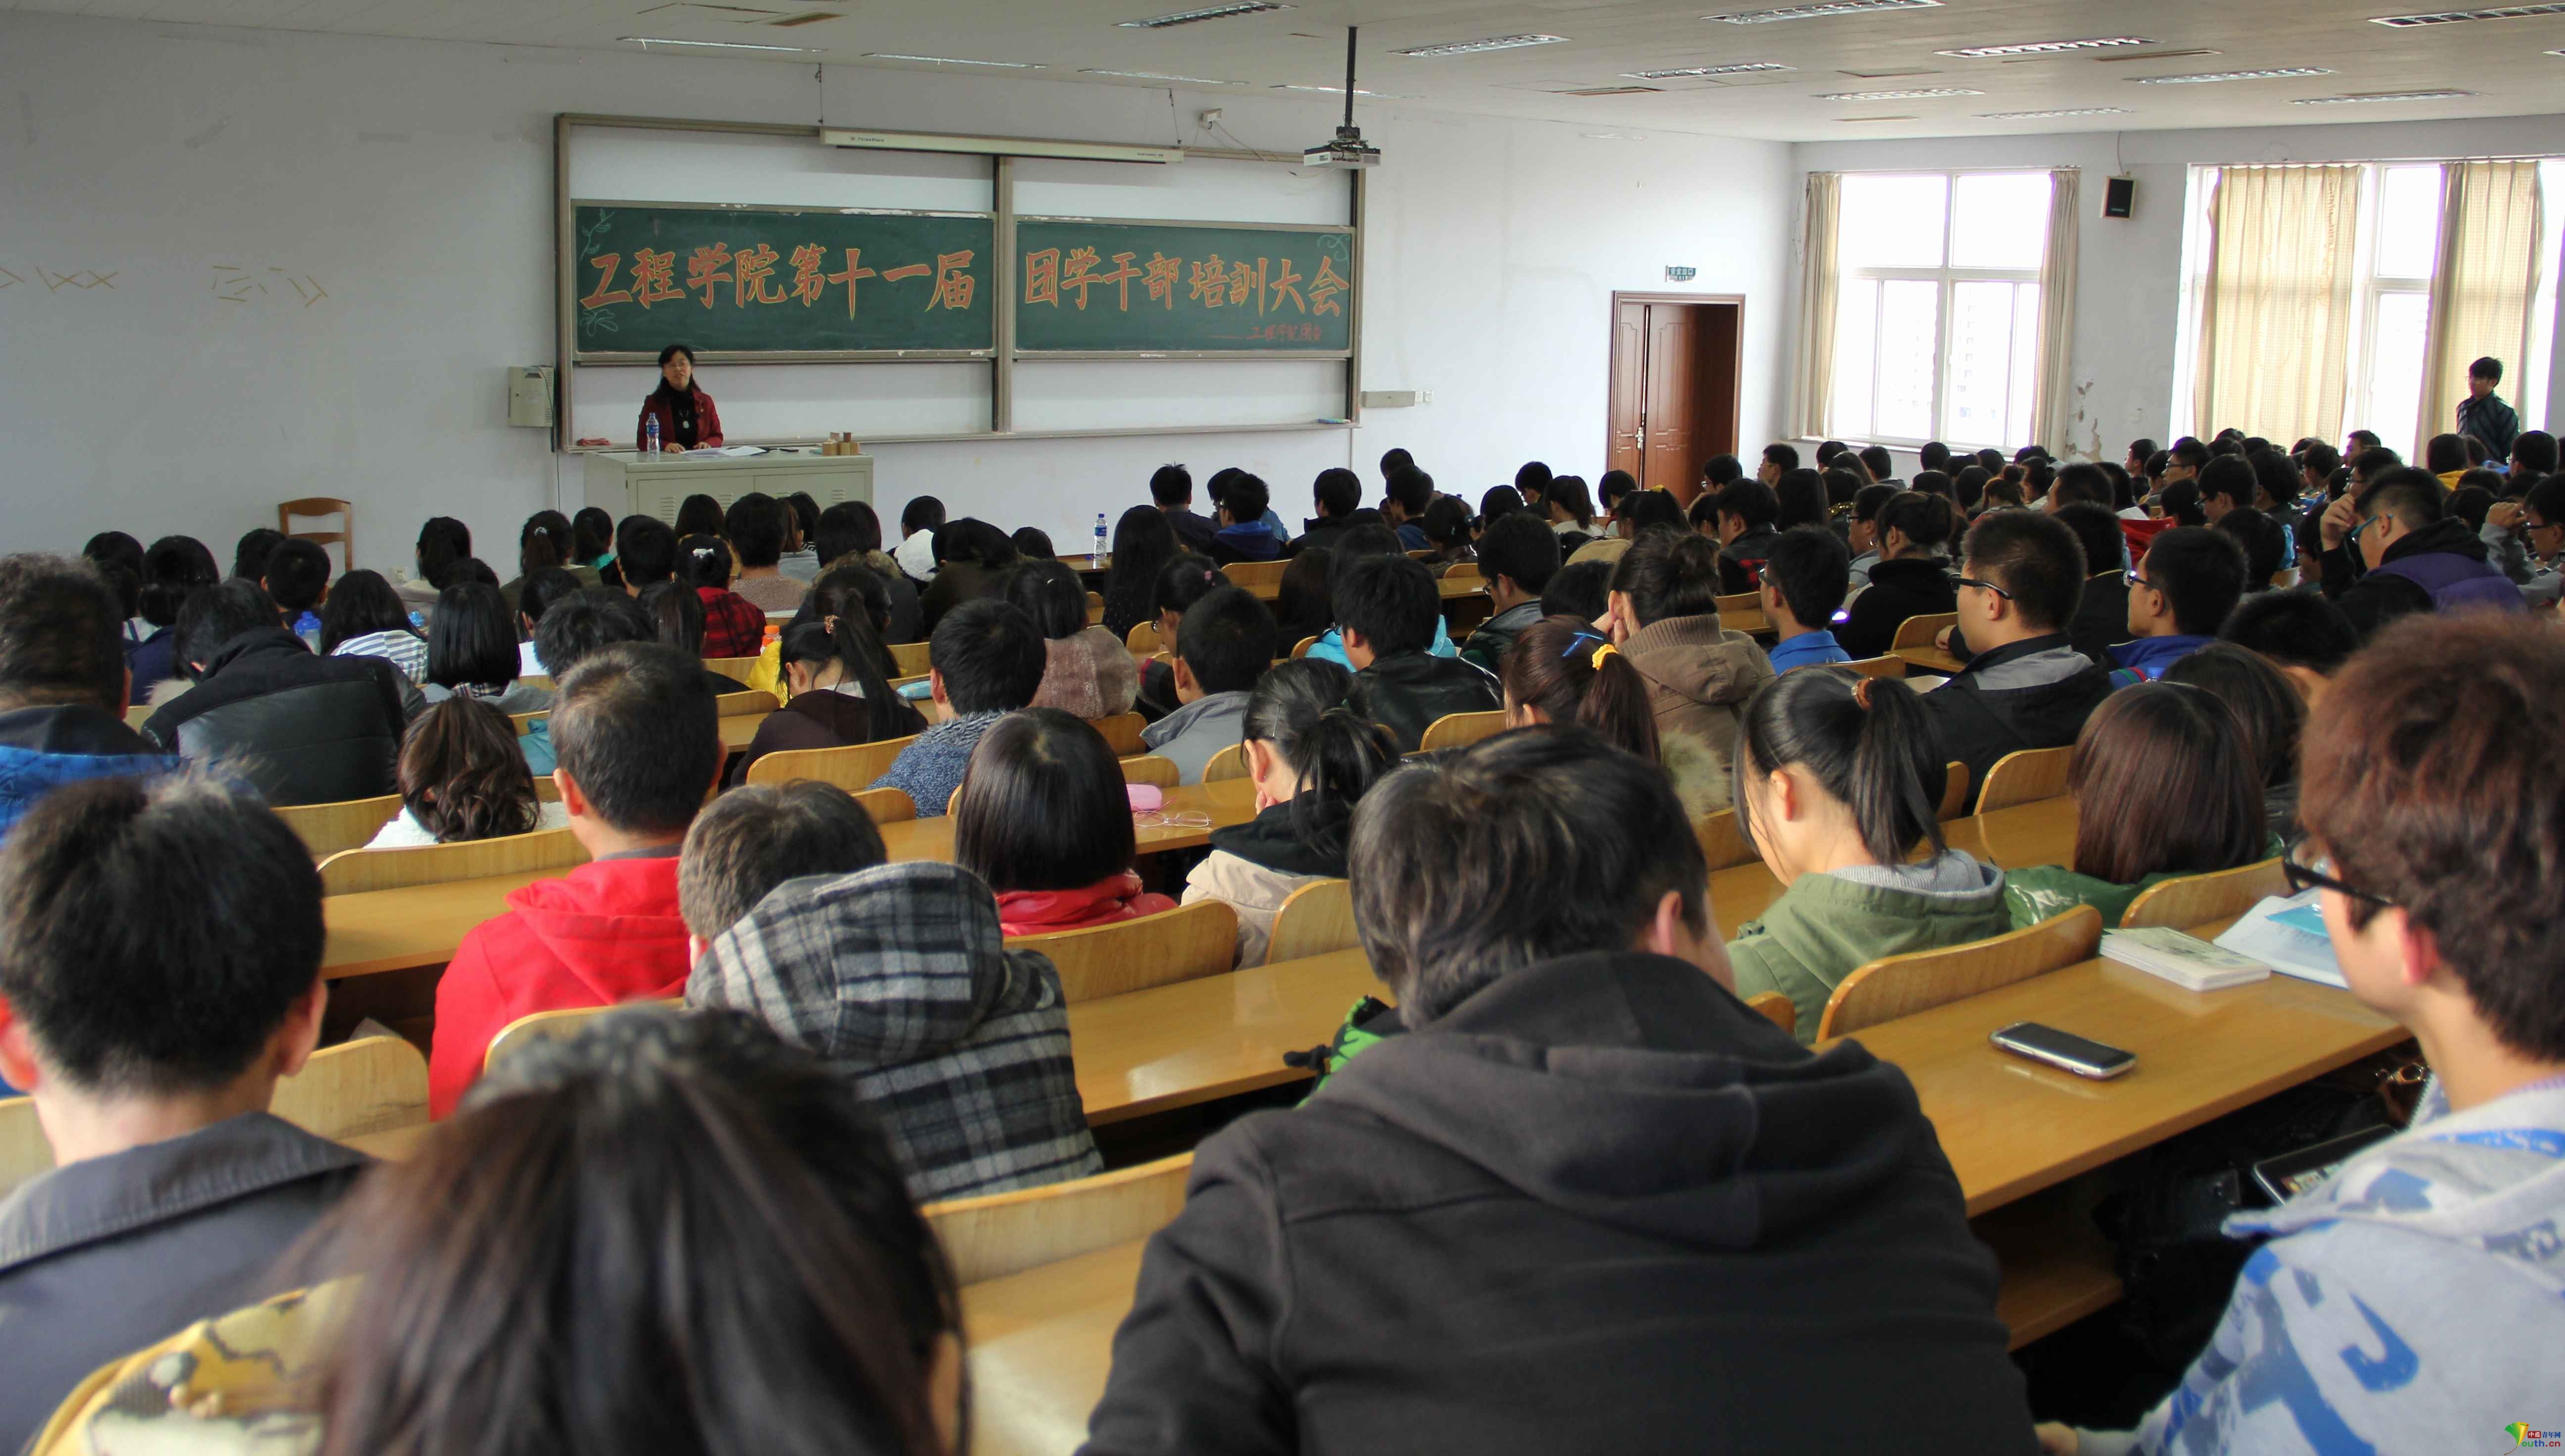 沈阳工业大学工程学院召开第十一届团学干部培